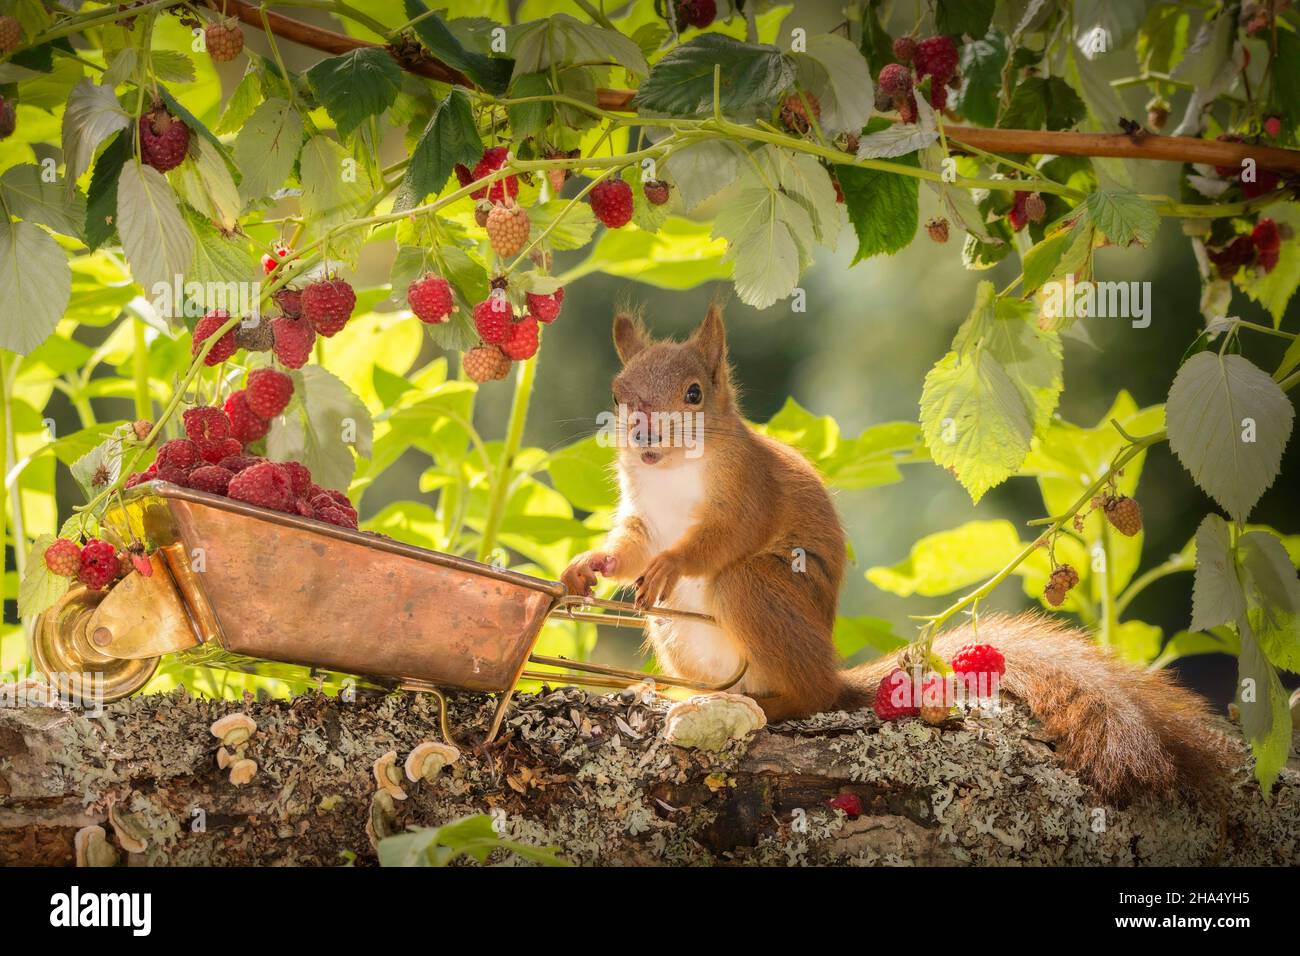 Eichhörnchen und eine rote Nase stehend mit einer Schubkarre gefüllt mit Himbeeren Stockfoto